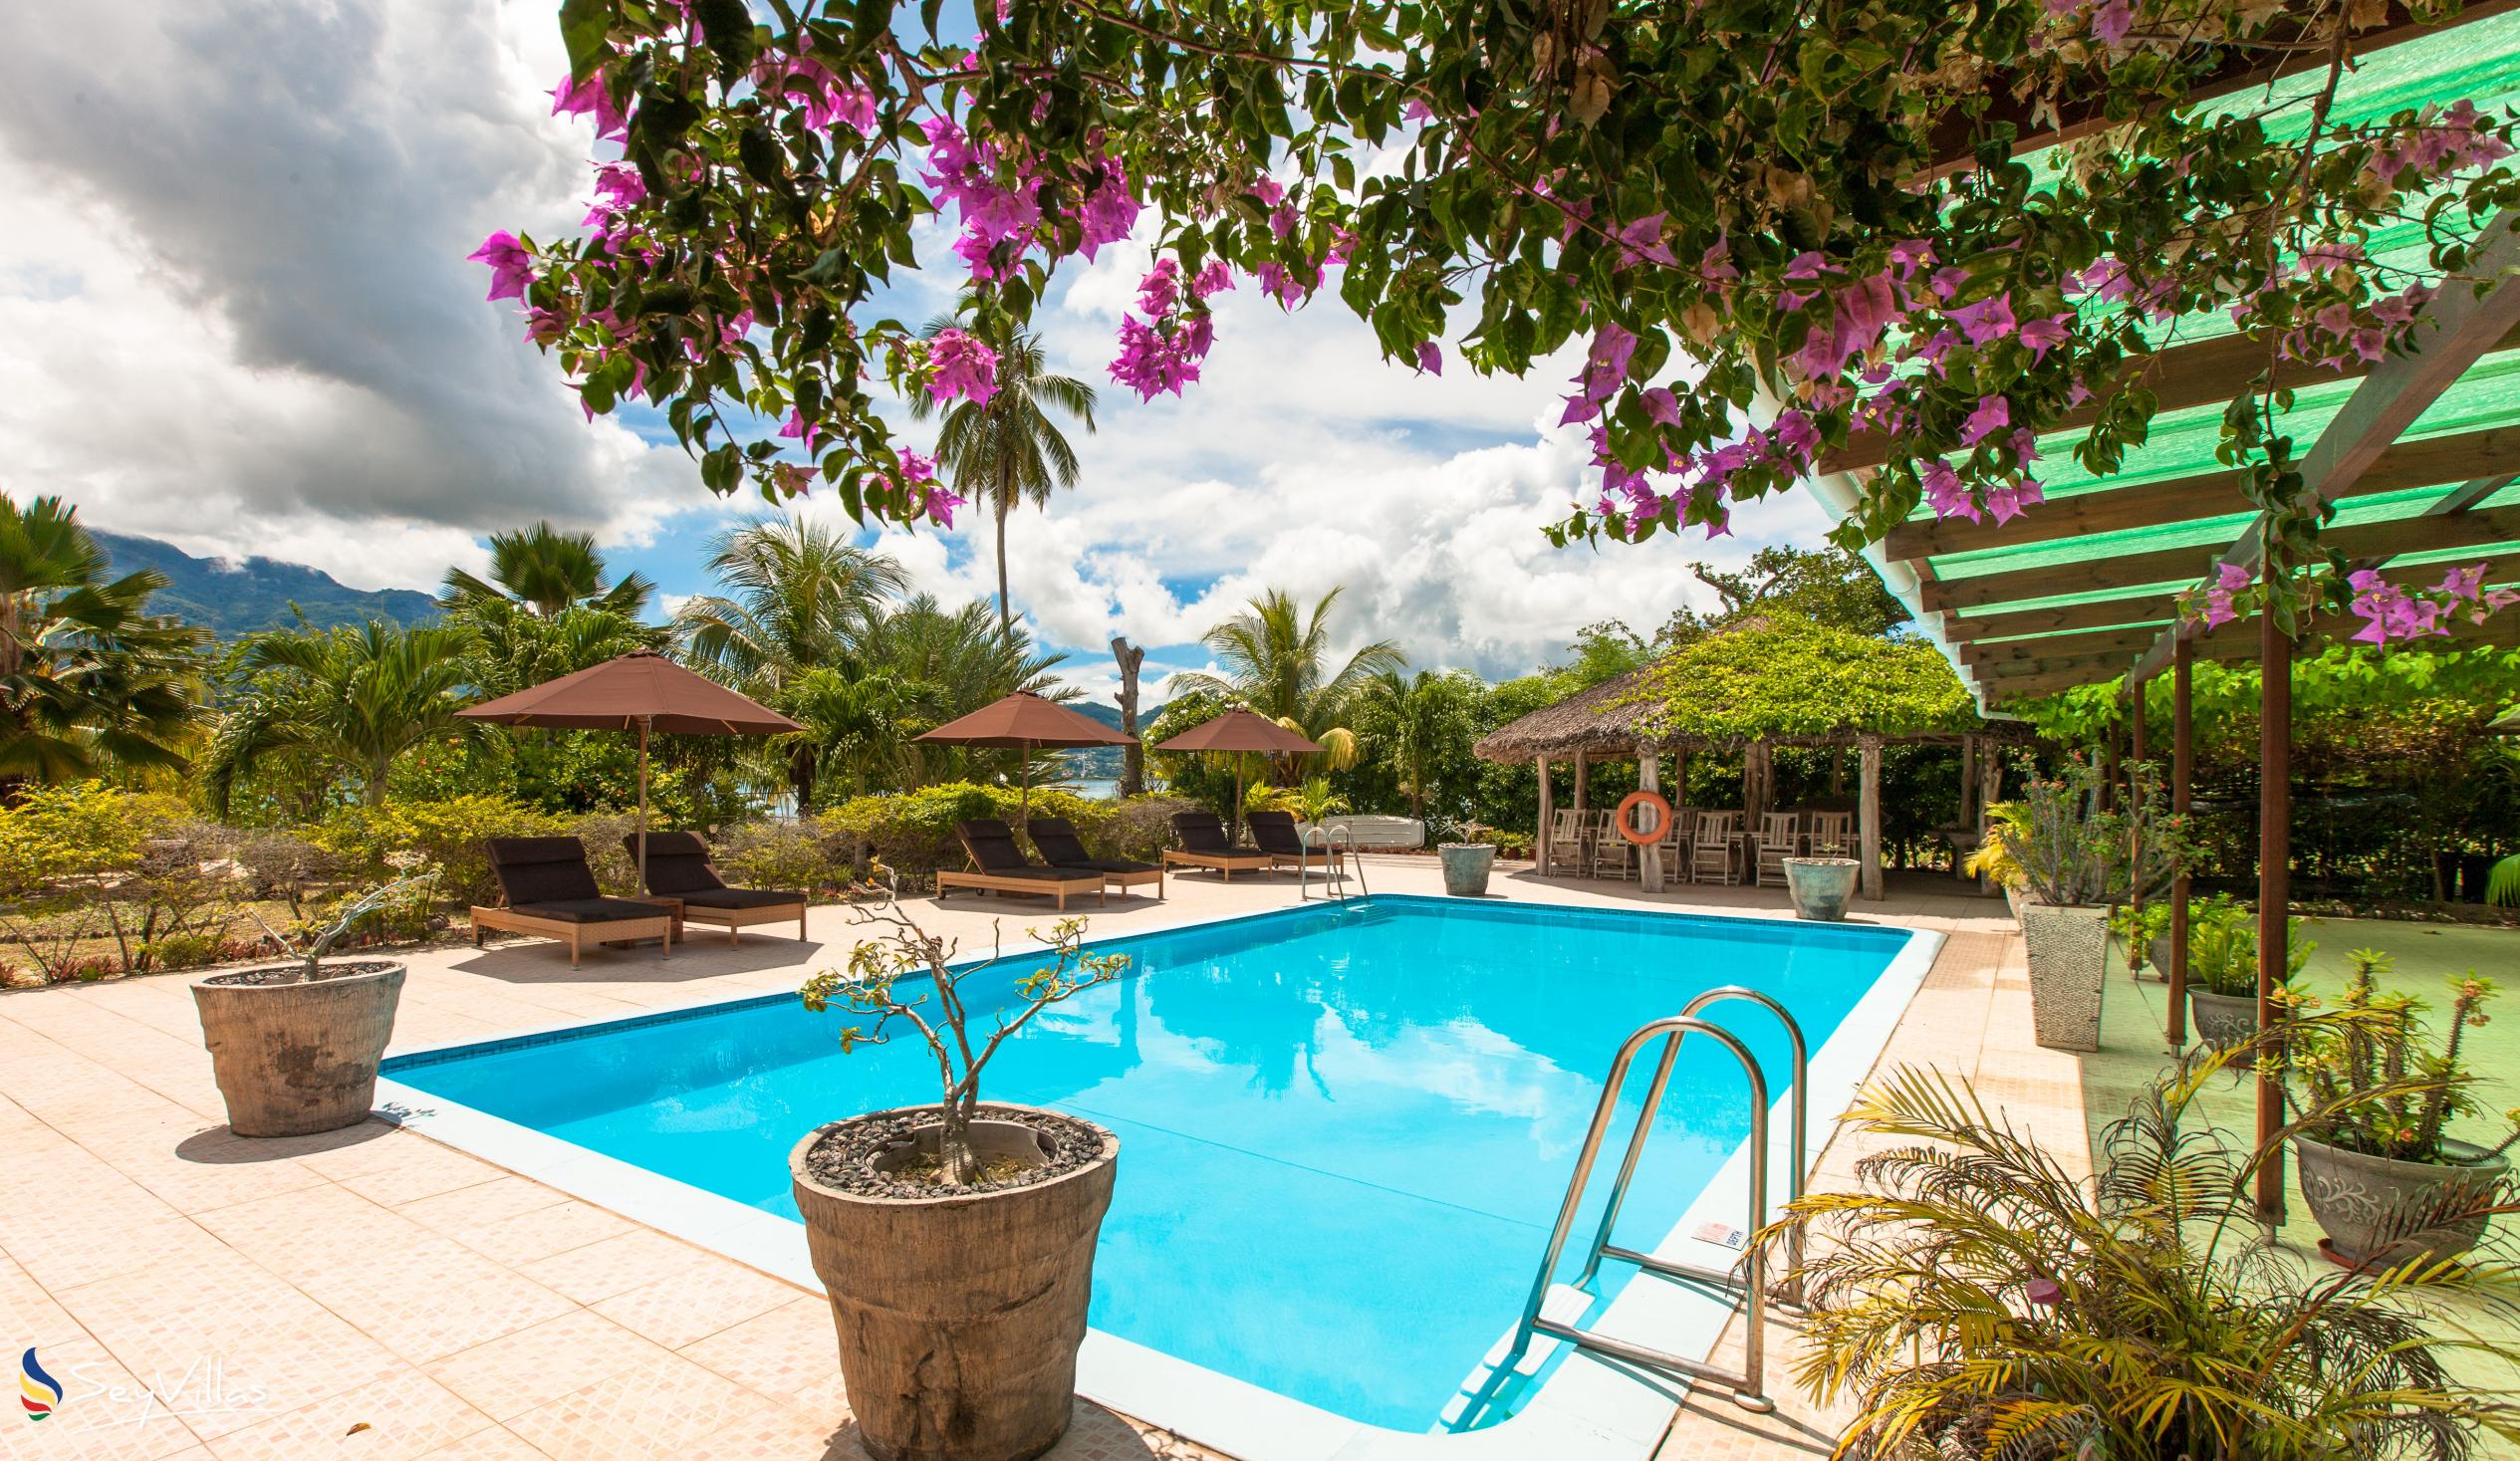 Foto 6: Villa de Cerf - Aussenbereich - Cerf Island (Seychellen)